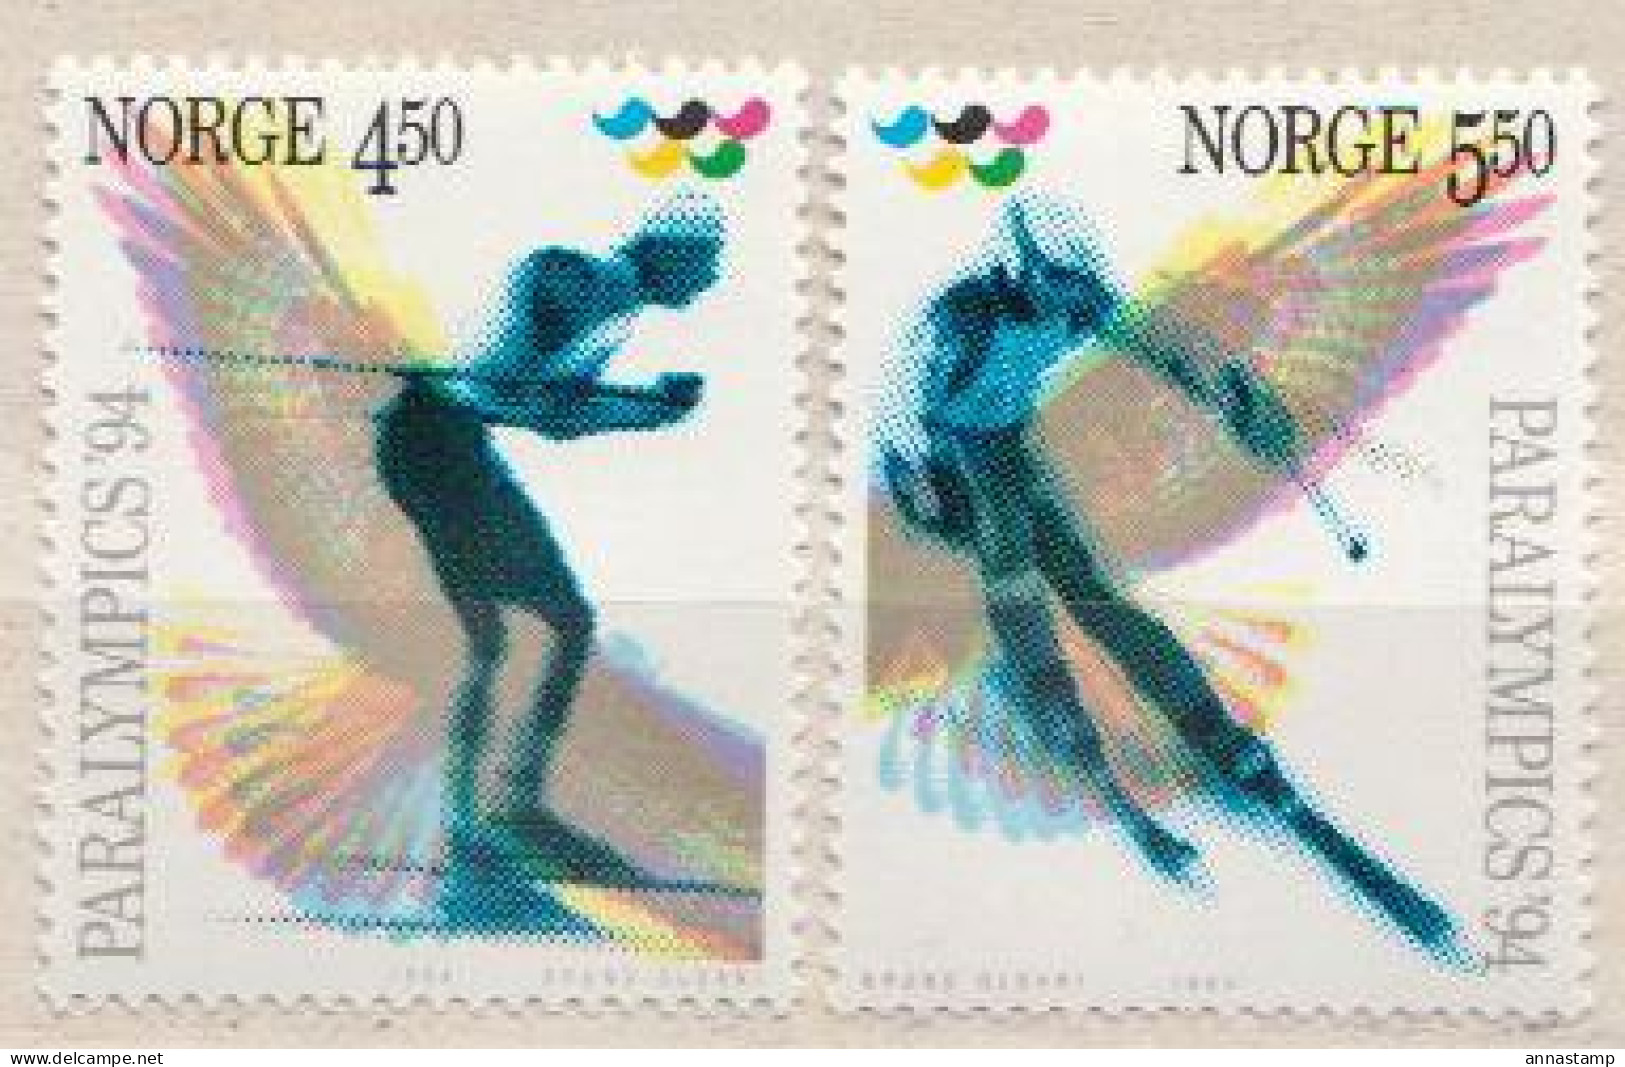 Norway MNH Set - Skisport